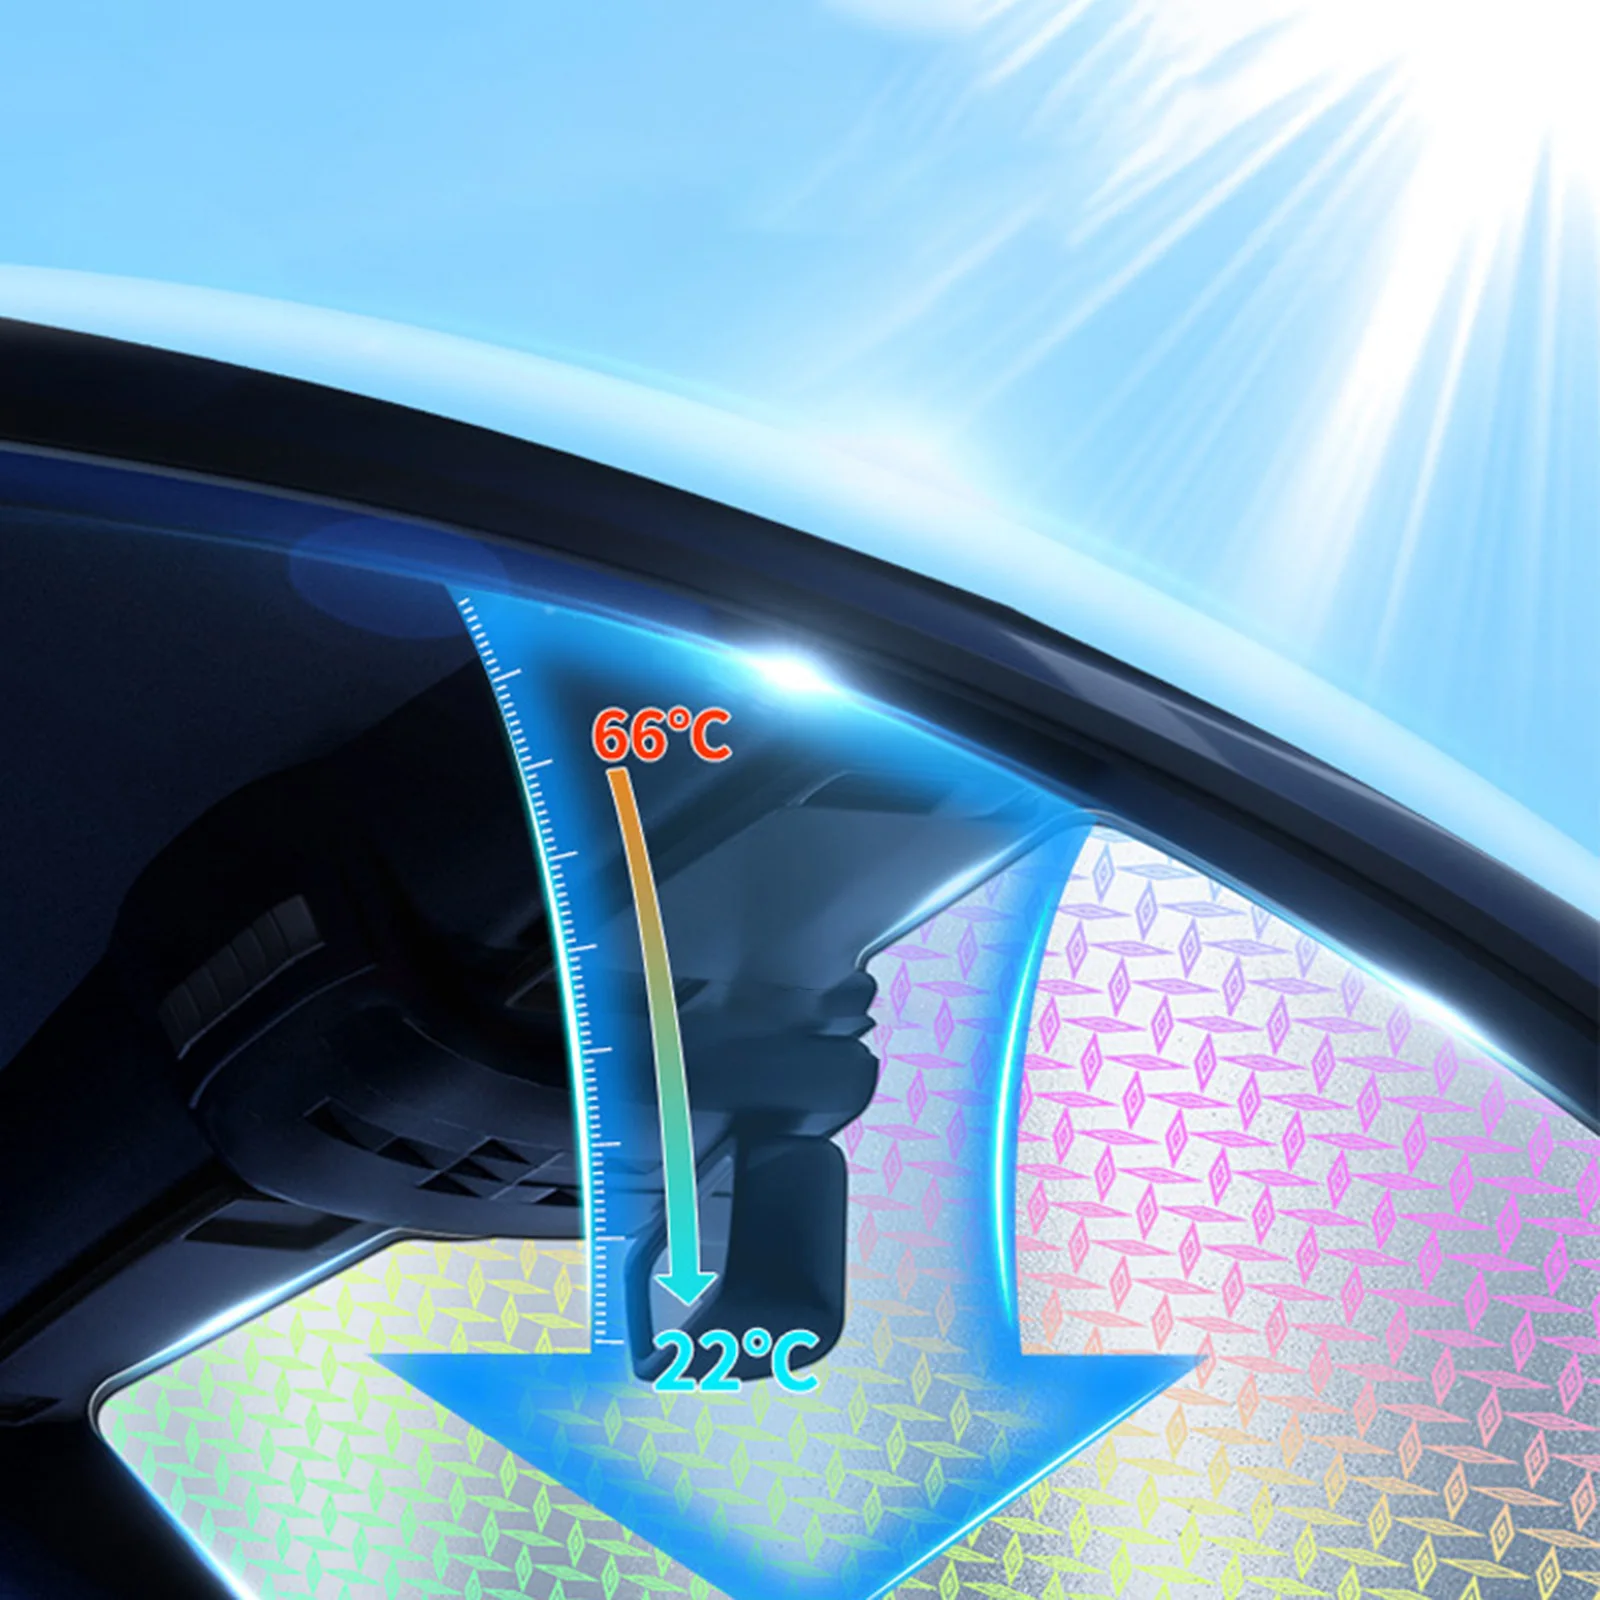 Солнцезащитный козырек, простая установка, сохраняет прохладу, утолщается, прочный Многофункциональный Переносной солнцезащитный козырек на лобовое стекло автомобиля для автозапчастей